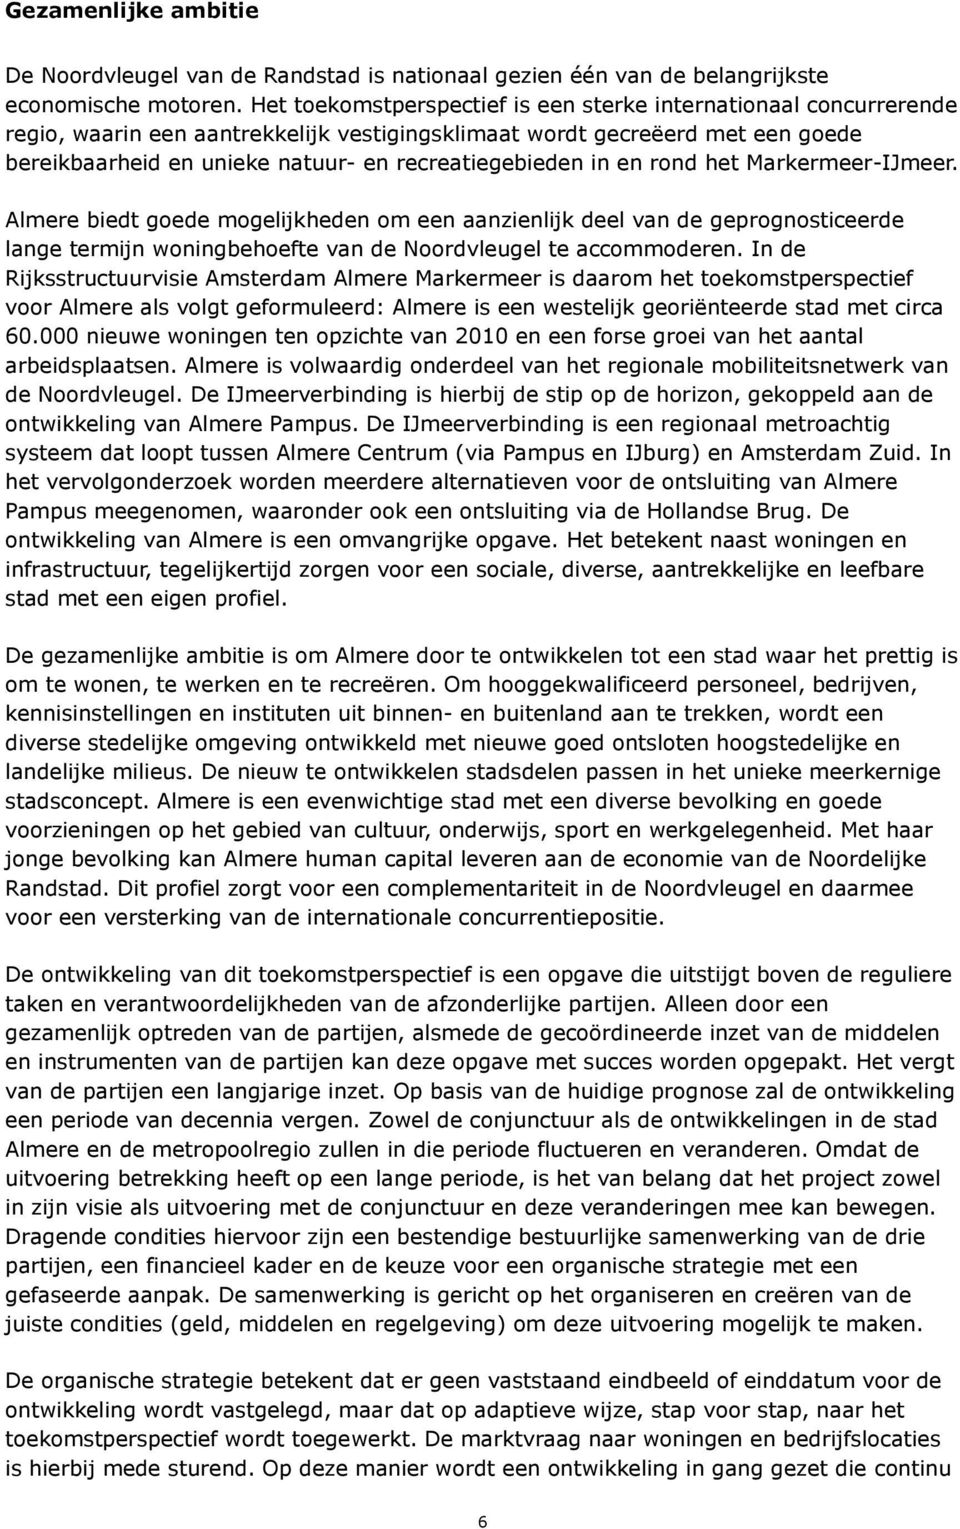 recreatiegebieden in en rond het Markermeer-IJmeer. Almere biedt goede mogelijkheden om een aanzienlijk deel van de geprognosticeerde lange termijn woningbehoefte van de Noordvleugel te accommoderen.